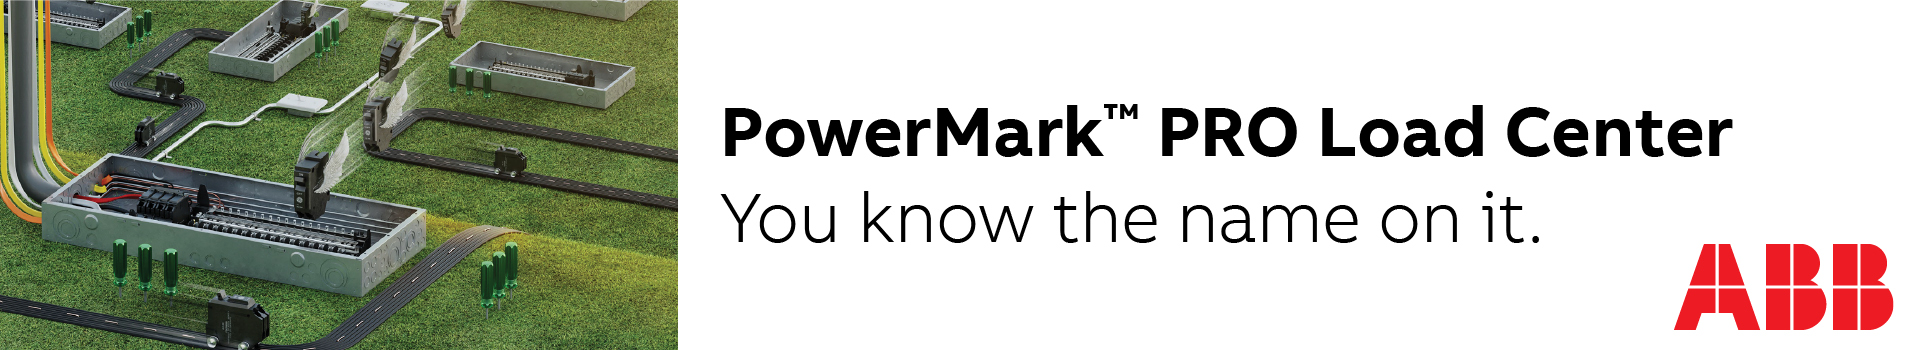 abb-powermark-pro-banner